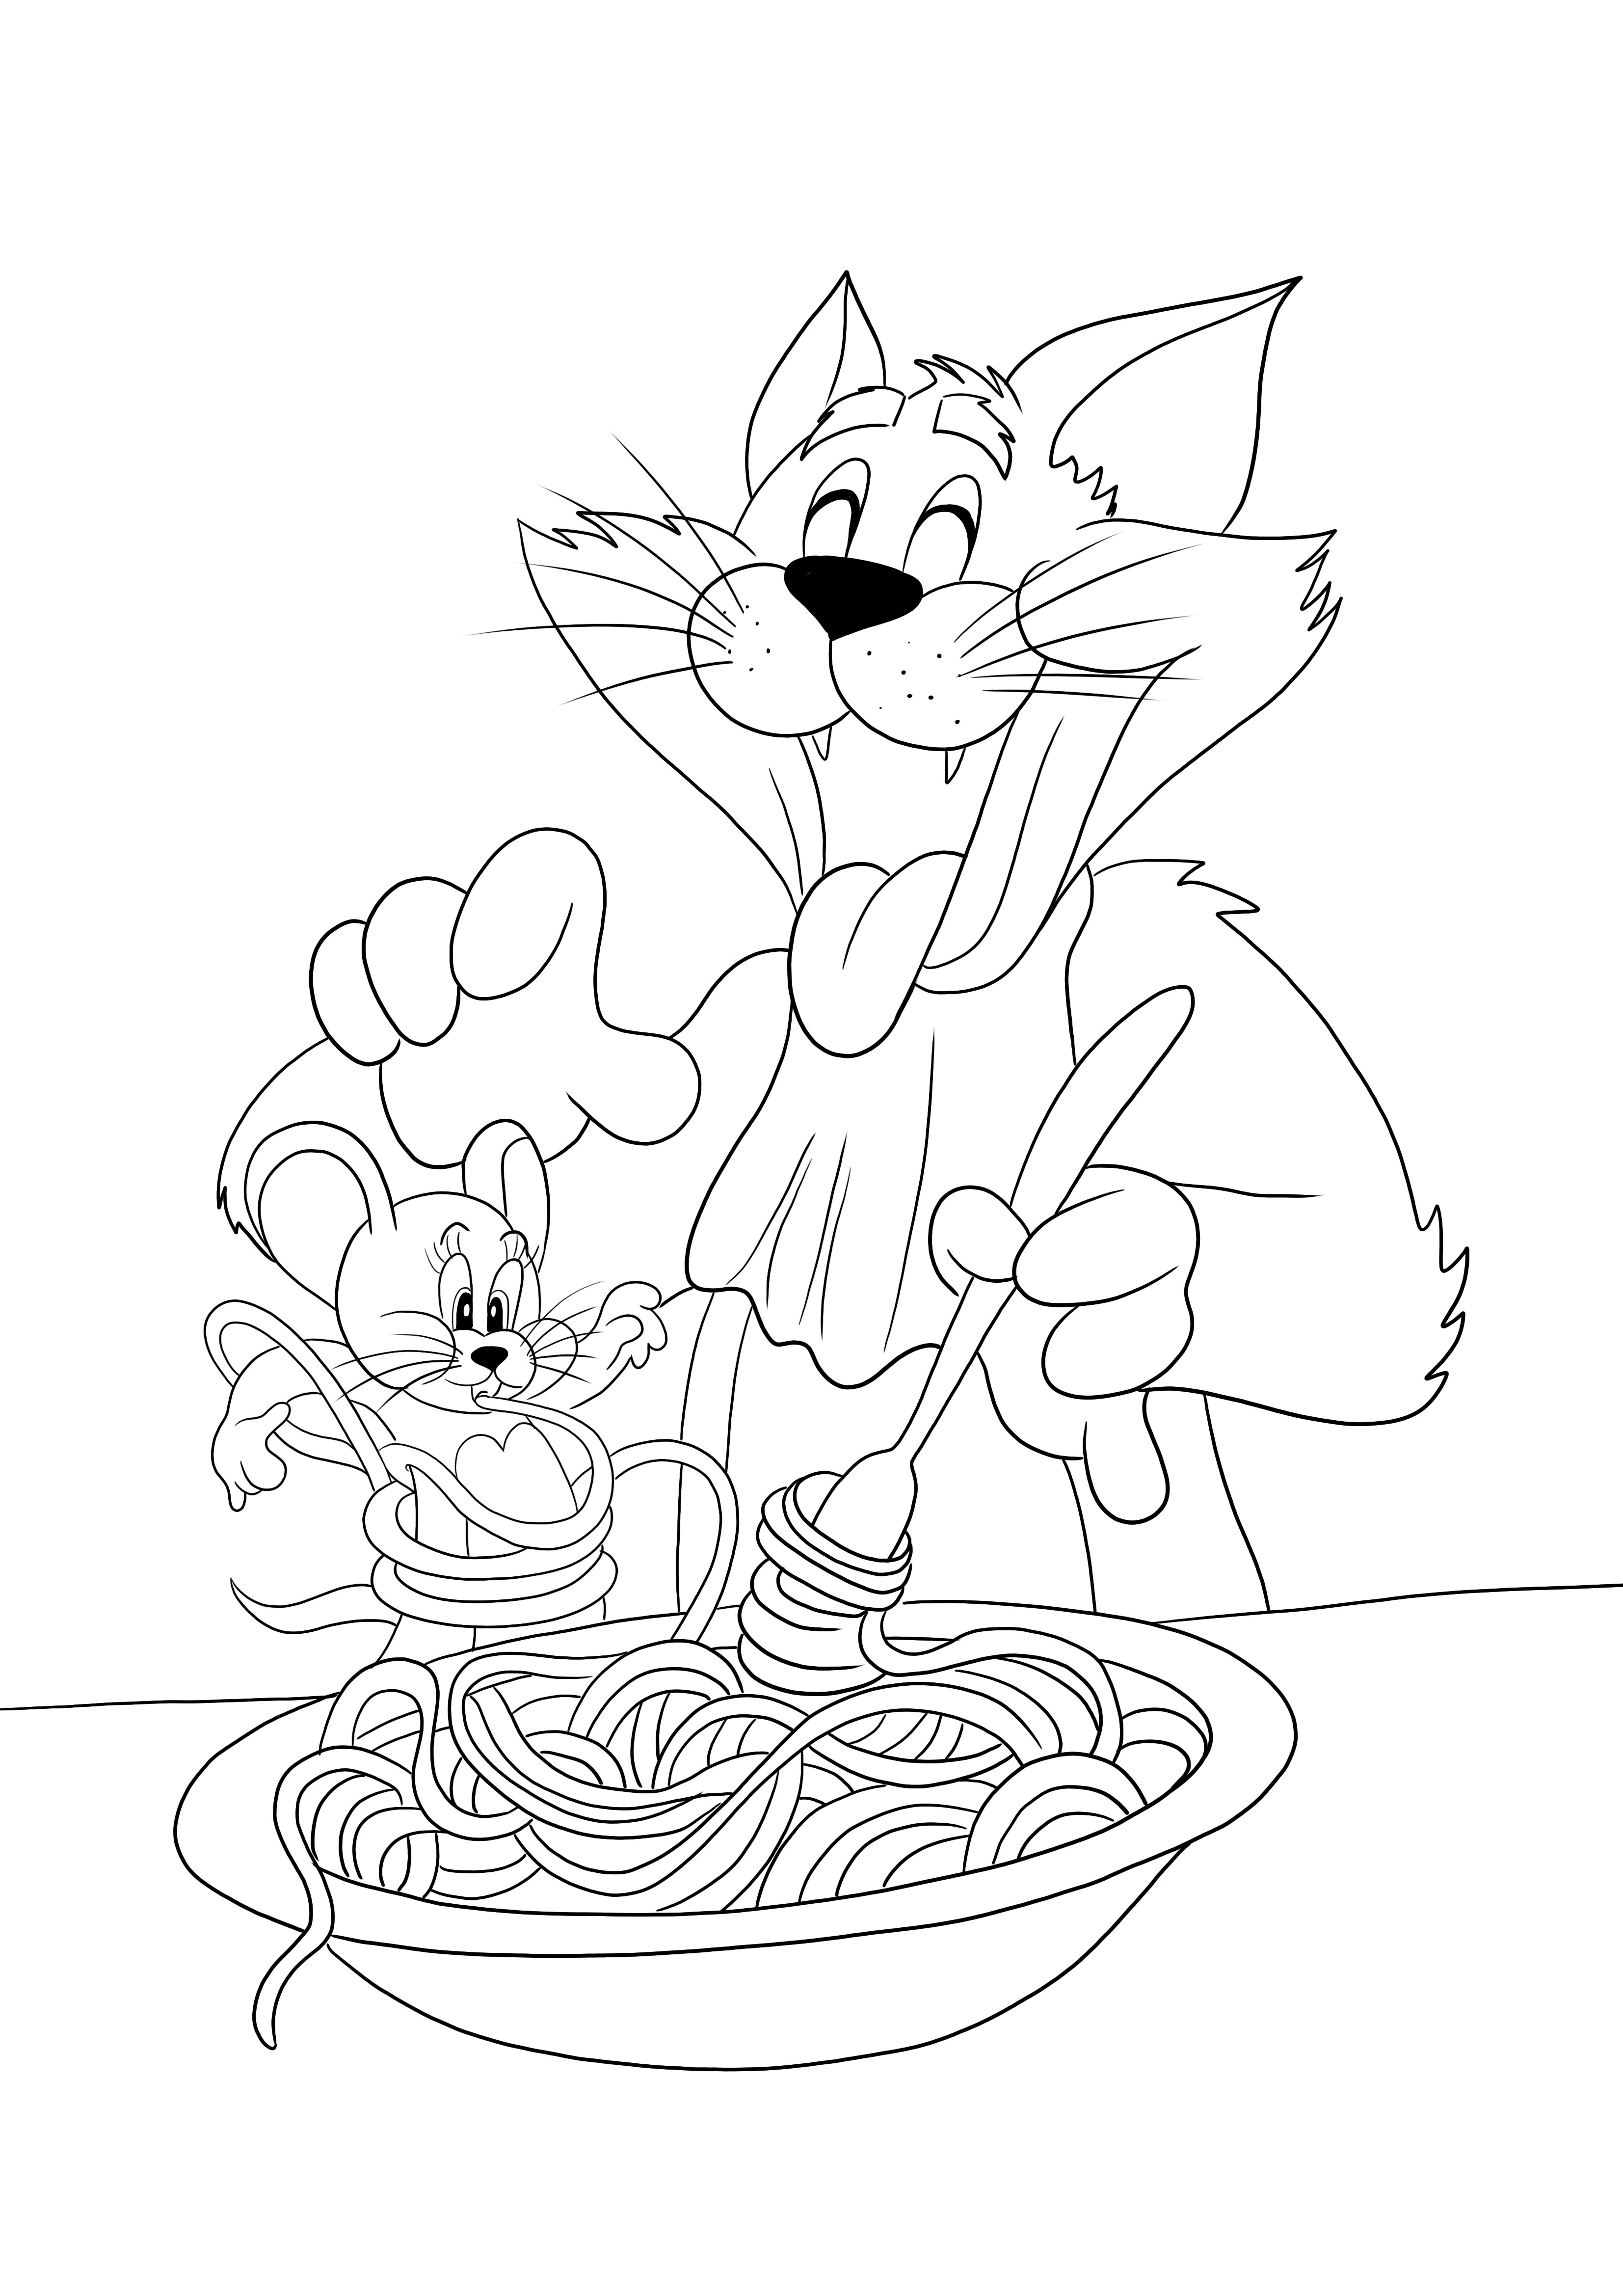 Tom come fideos y Jerry-un divertido imprimible listo para colorear